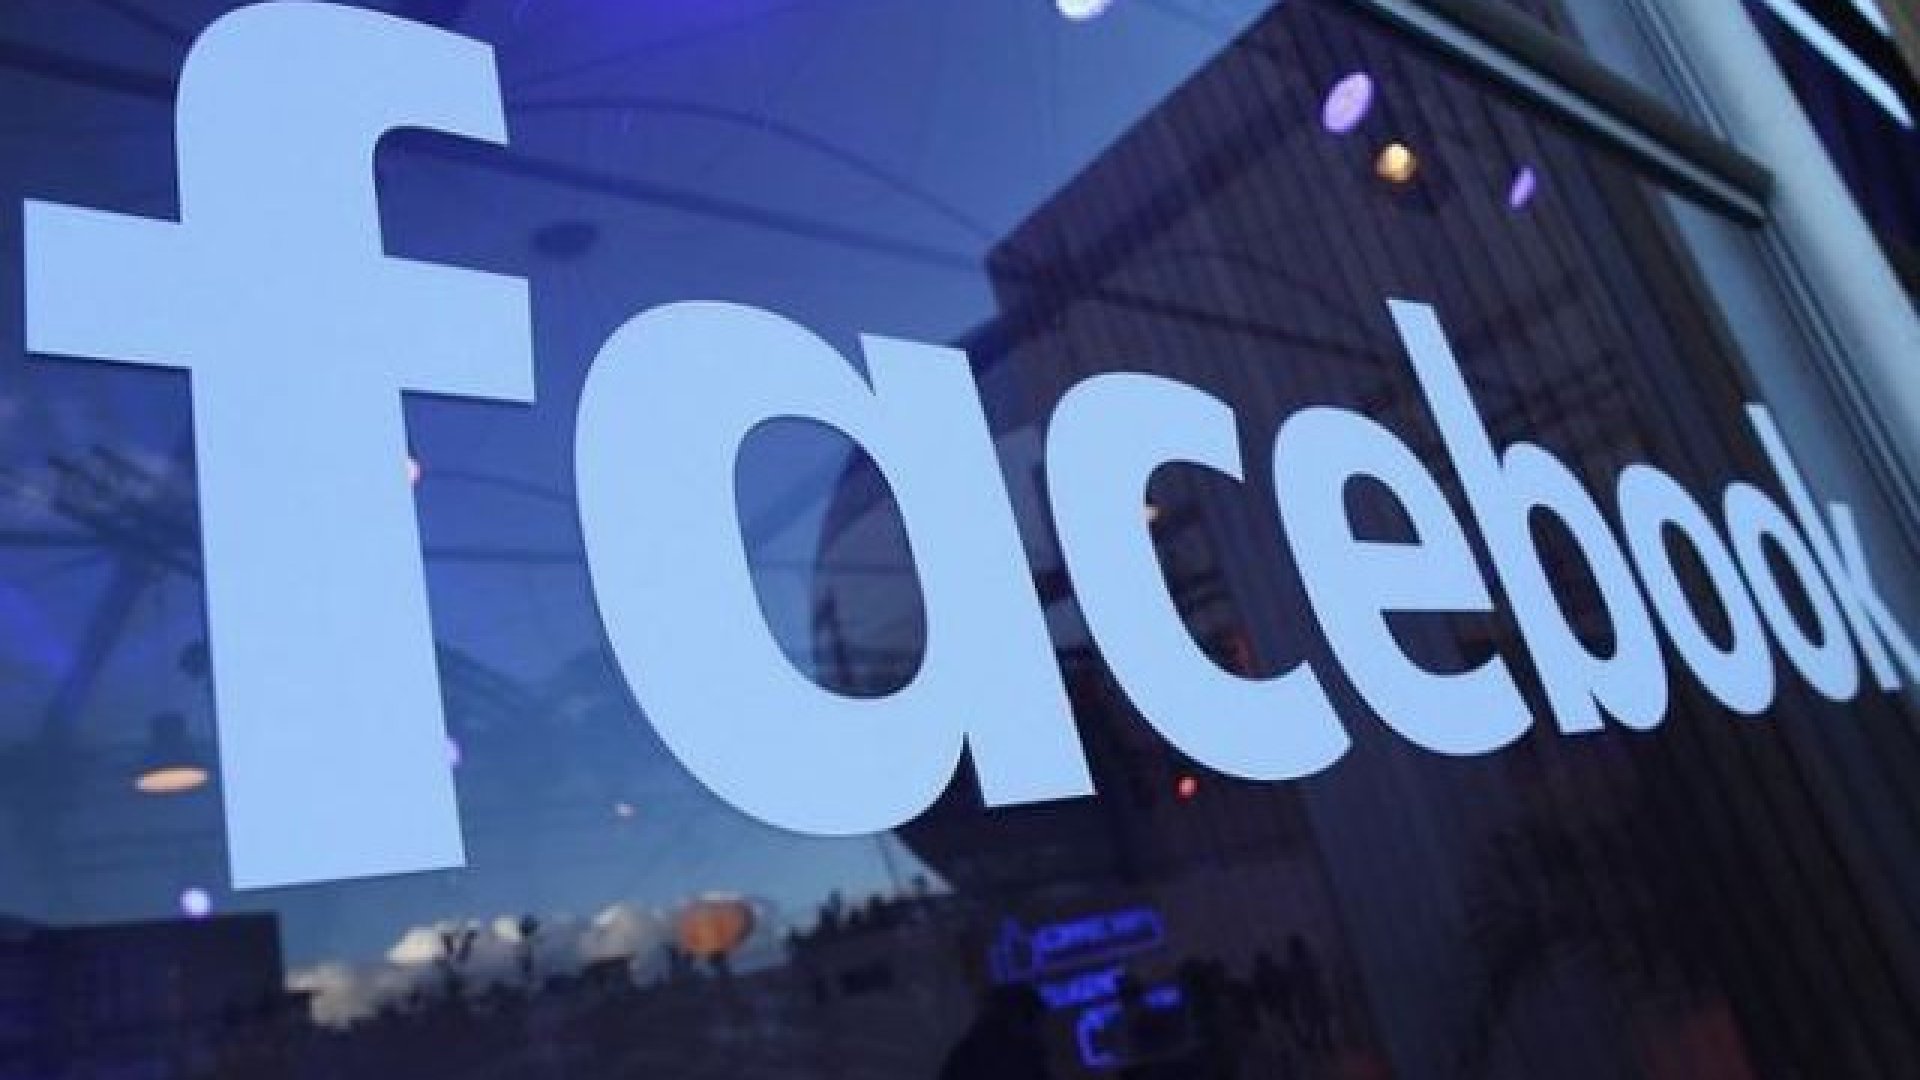 "فيسبوك" تطلق تطبيقًا جديدًا يكافئ مستخدميه بمبالغ مالية